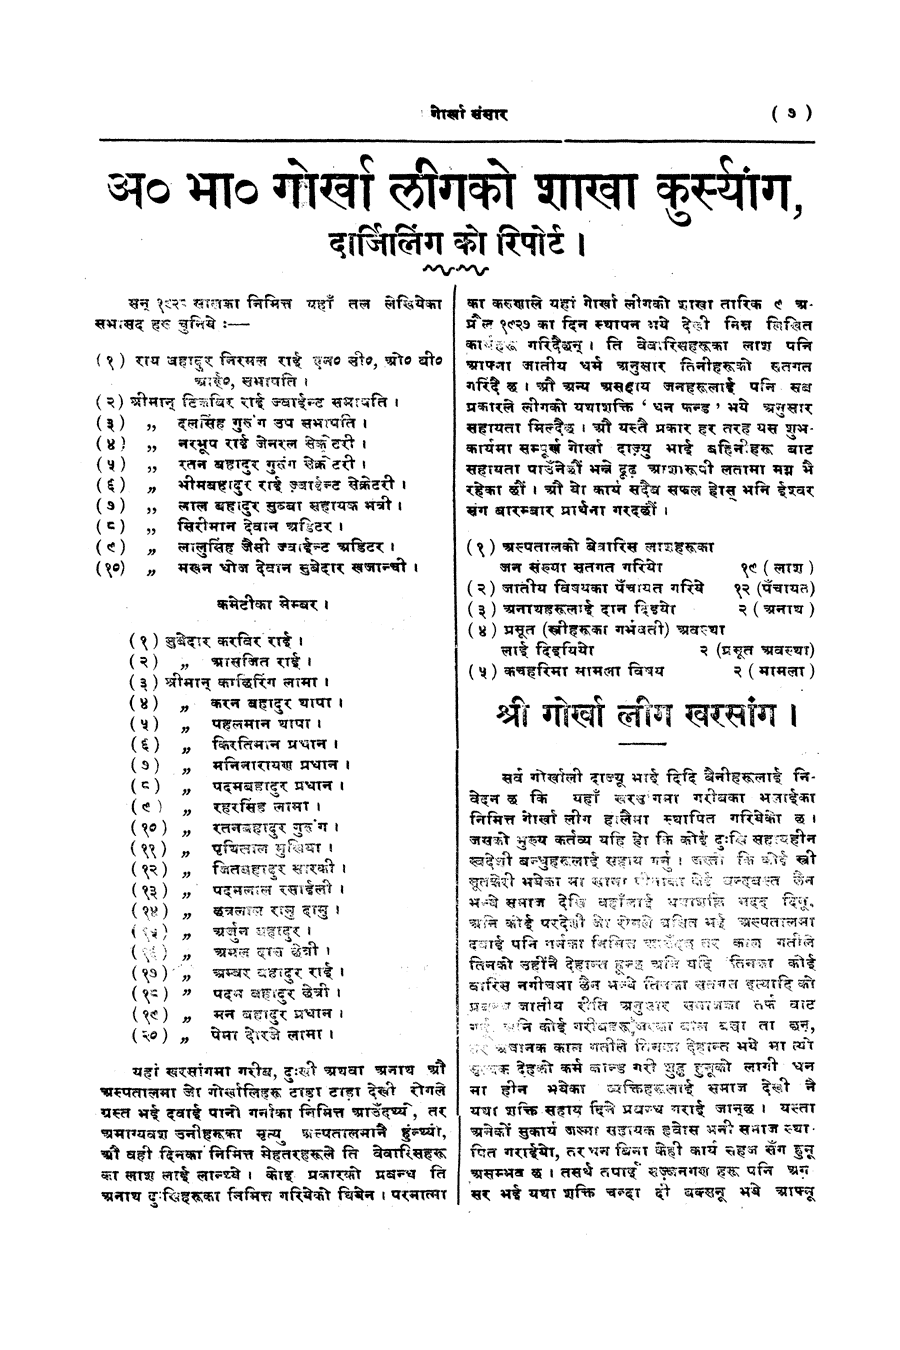 Gorkha Sansar, 7 Feb 1928, page 7